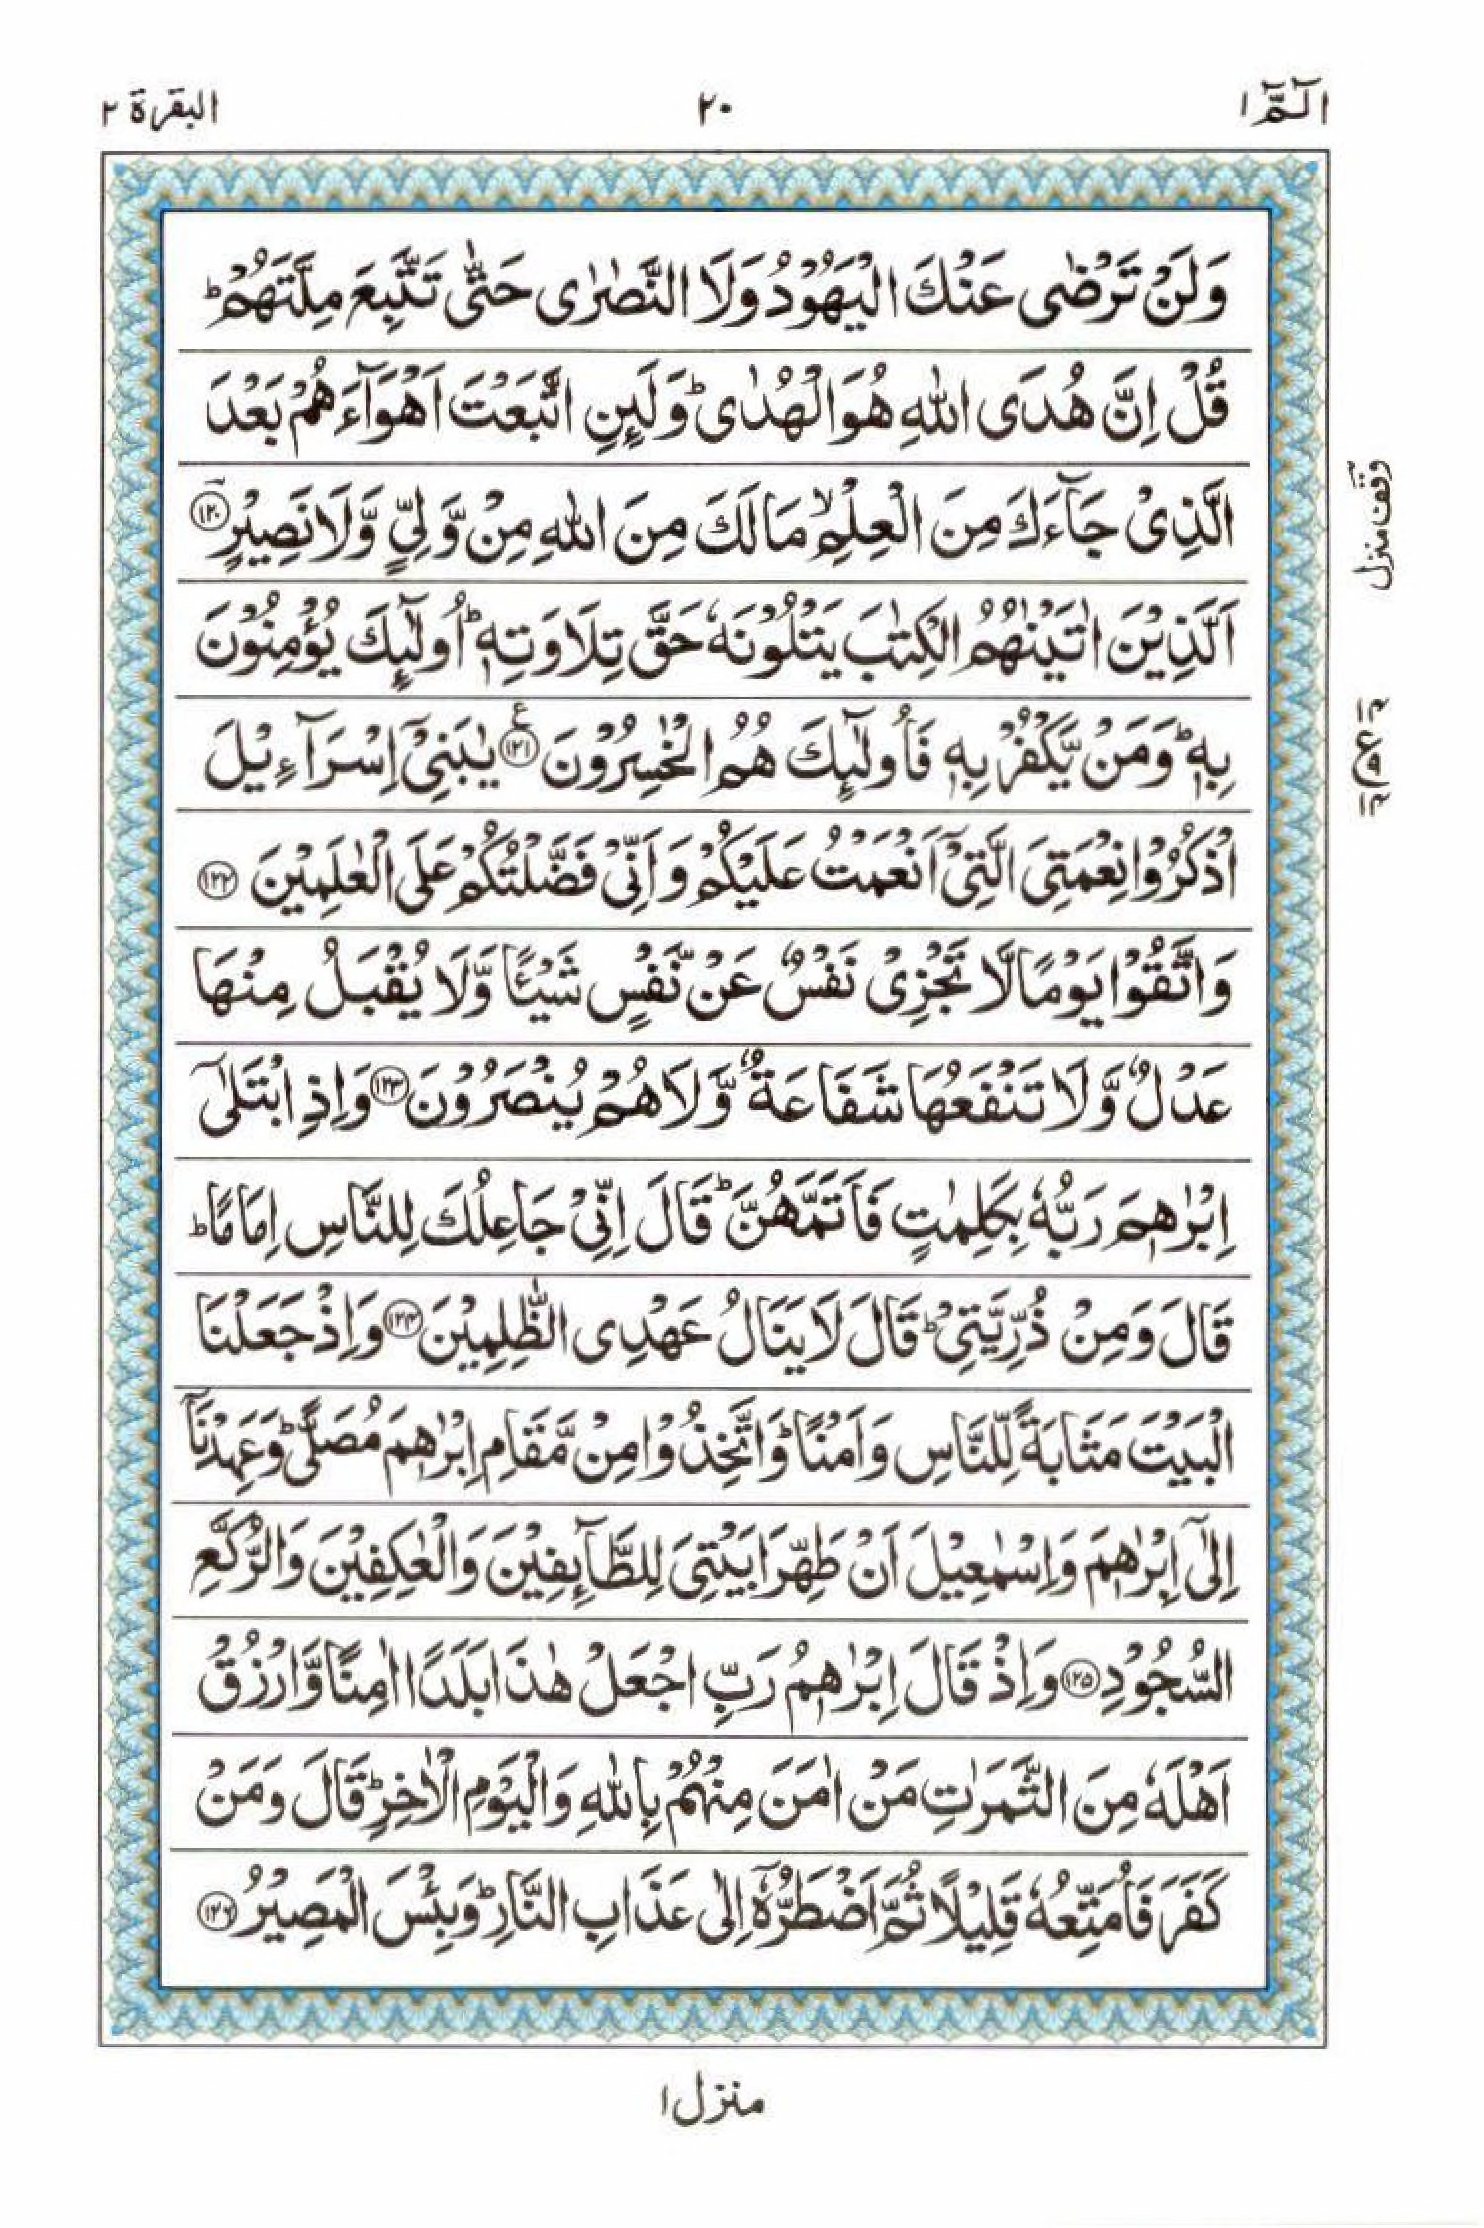 Read 15 Lines Al Quran Part 1 Page No 20, Practice Quran